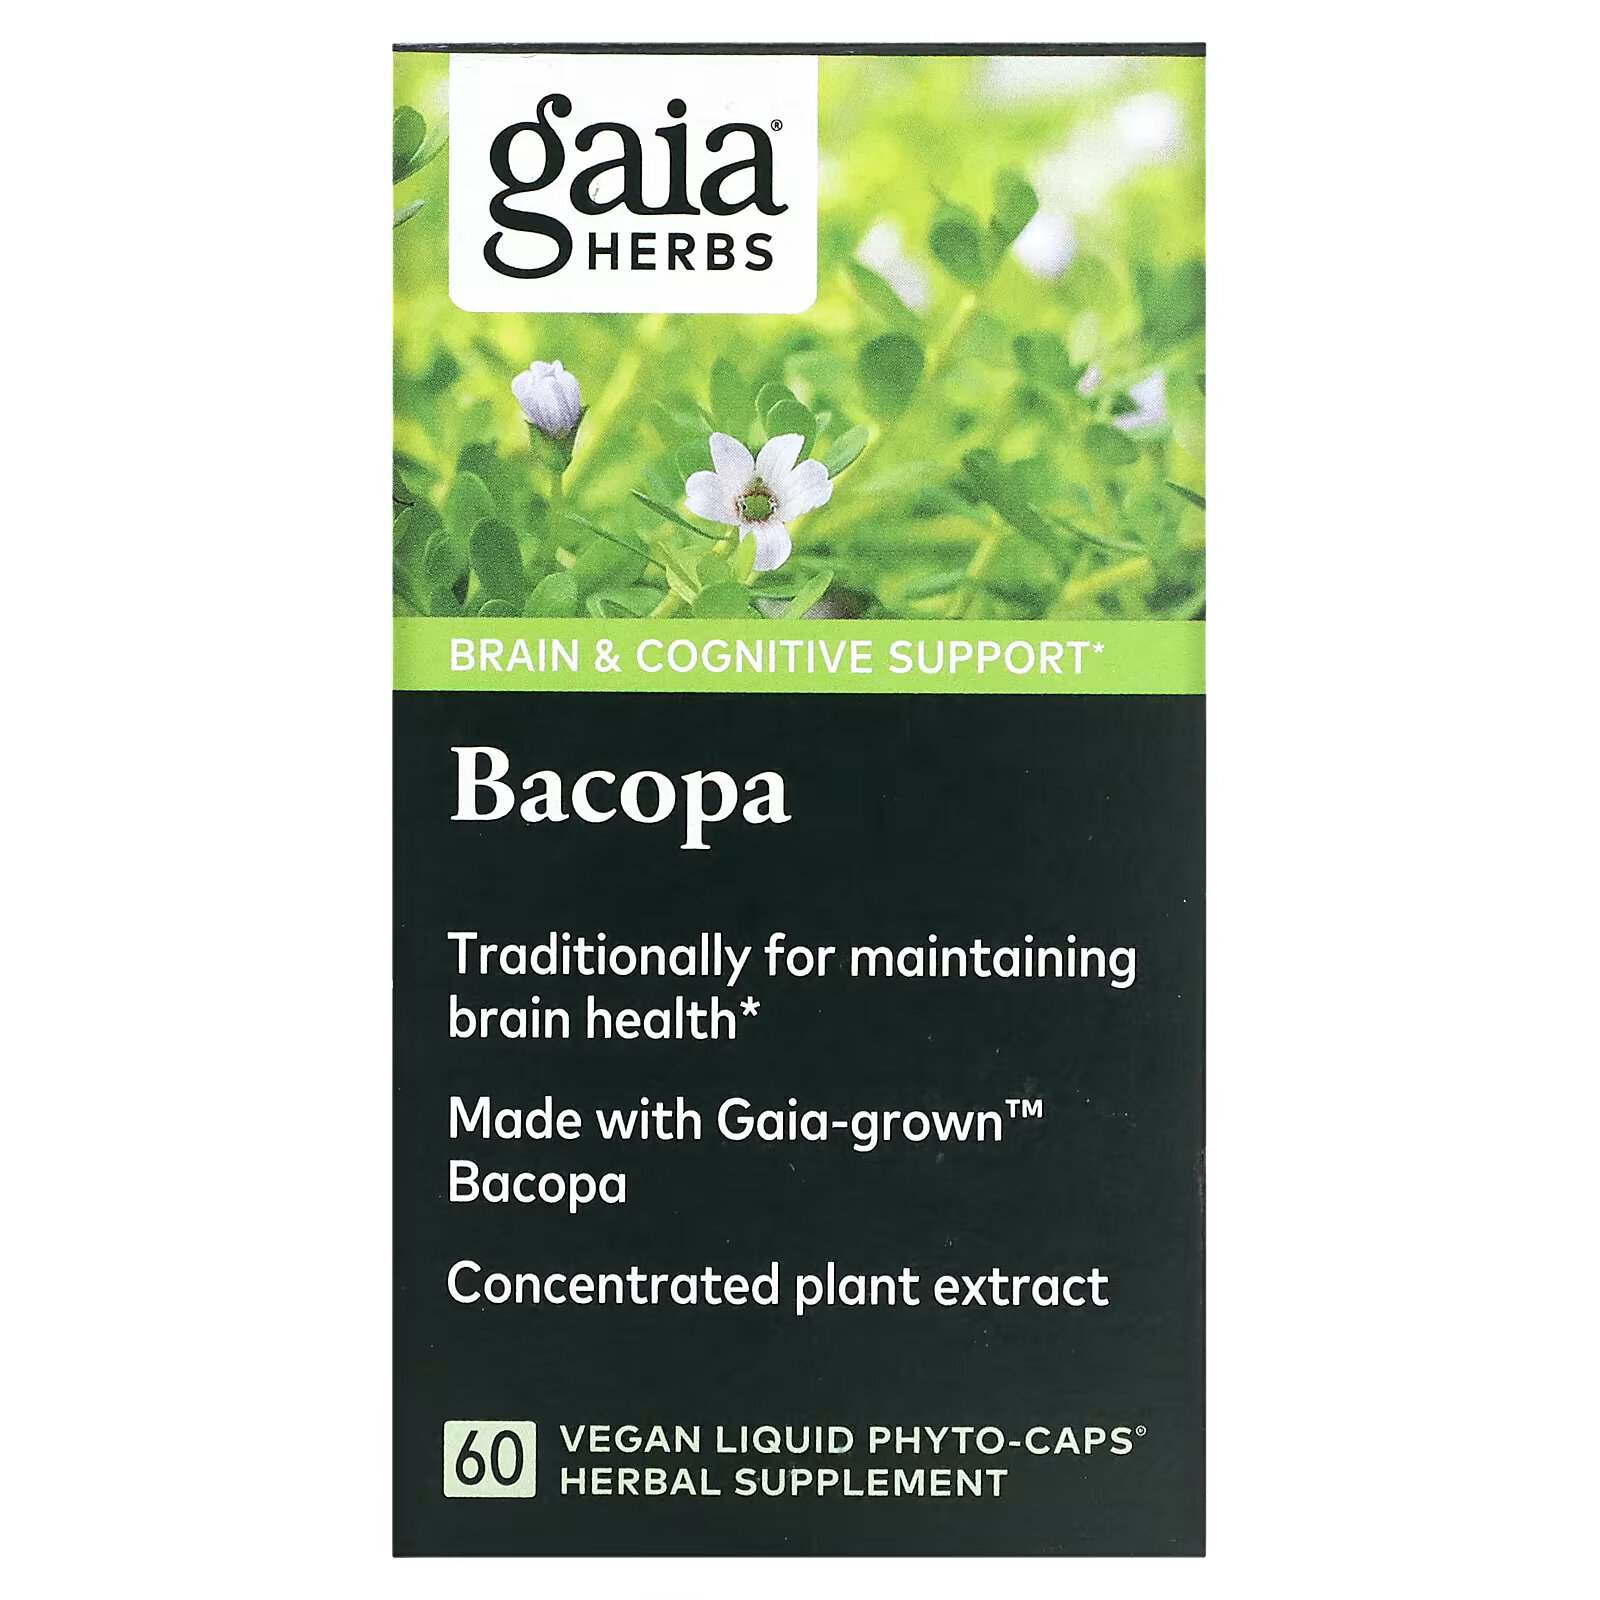 Gaia Herbs, Бакопа, 60 веганских капсул Phyto-Cap gaia herbs семена расторопши 60 веганских капсул с жидким содержимым liquid phyto cap